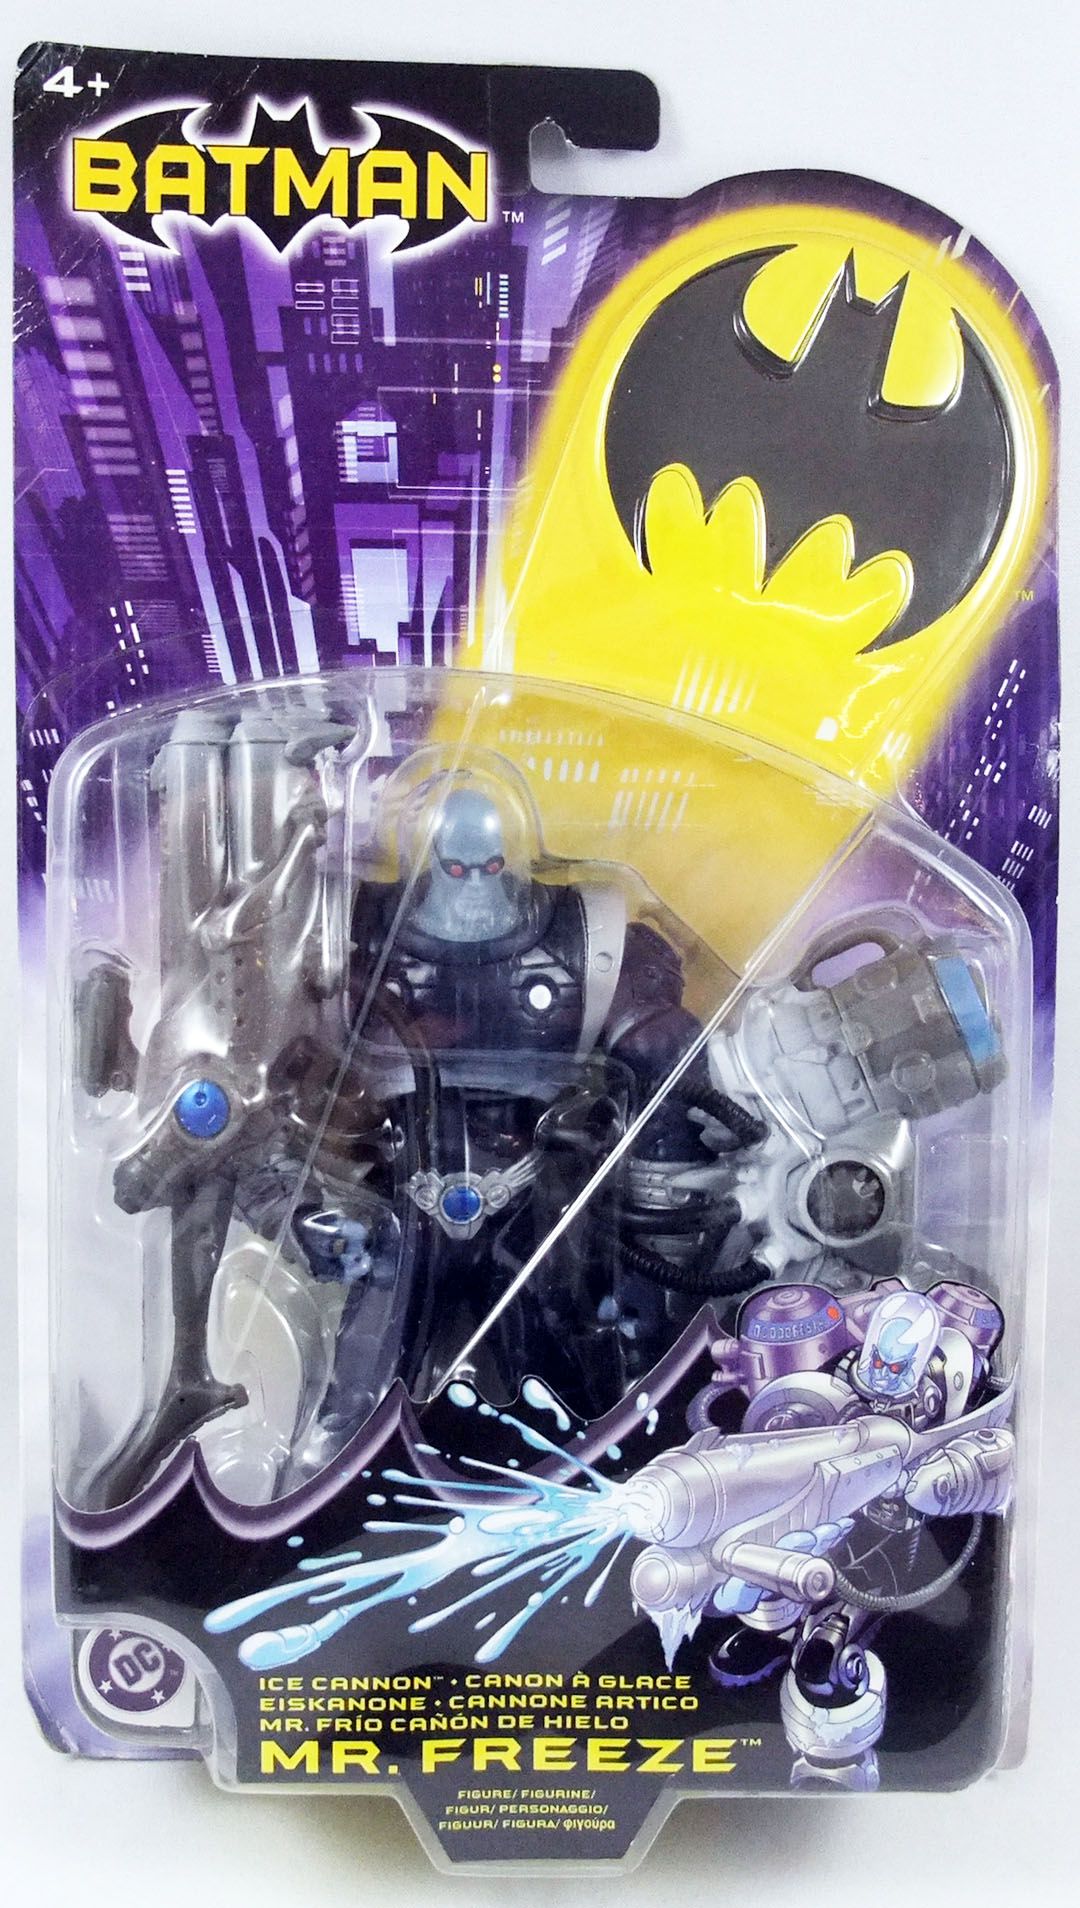 Batman Arctic Shield VS Mr Freeze Ice Cannon Action Figures Mattel 2004 S8 for sale online 